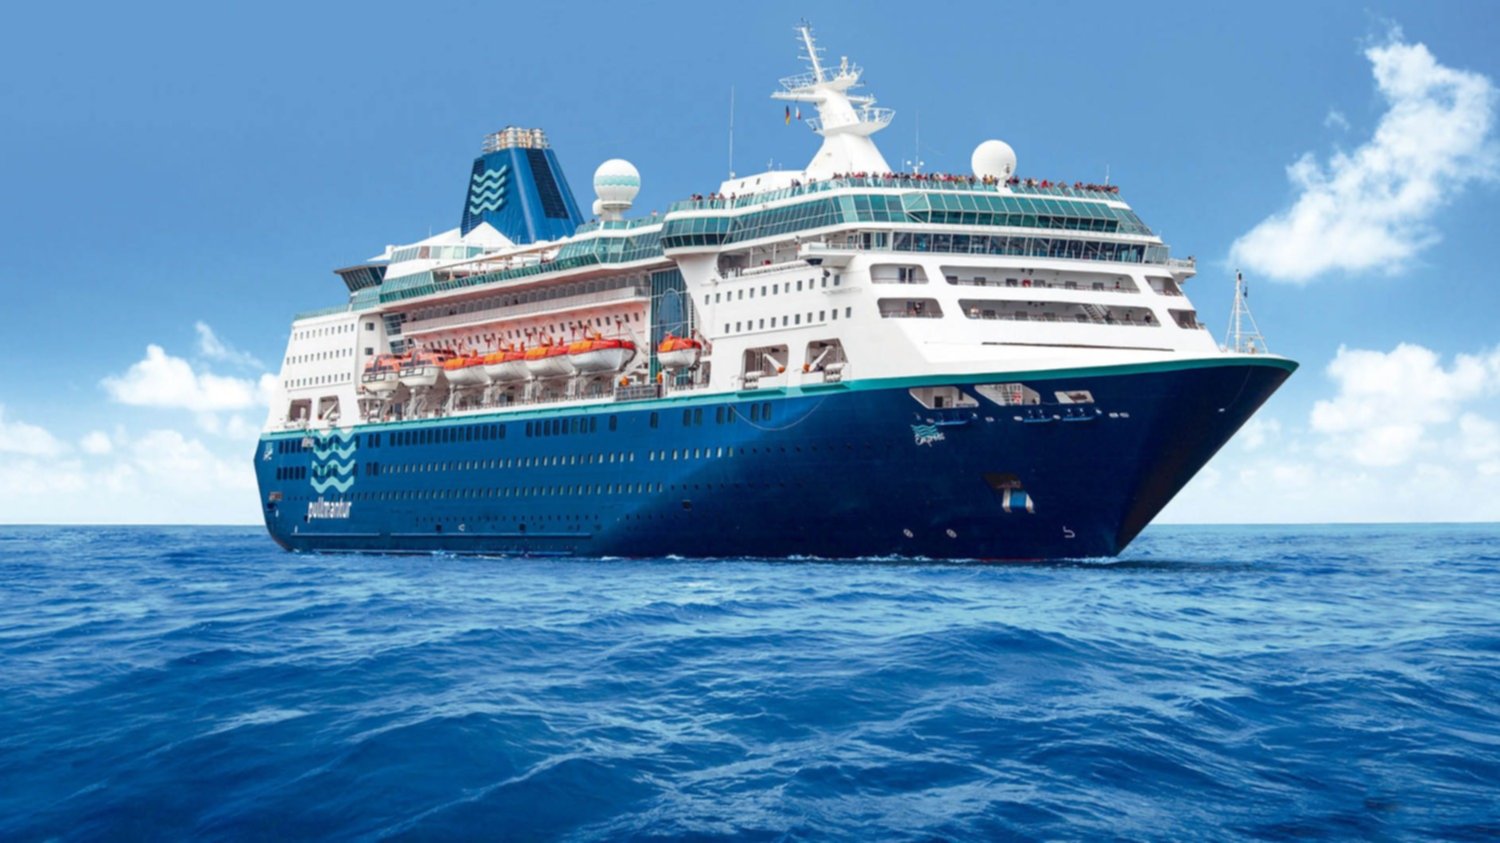 Crucero por el Caribe el paraíso a tus pies en vacaciones de verano